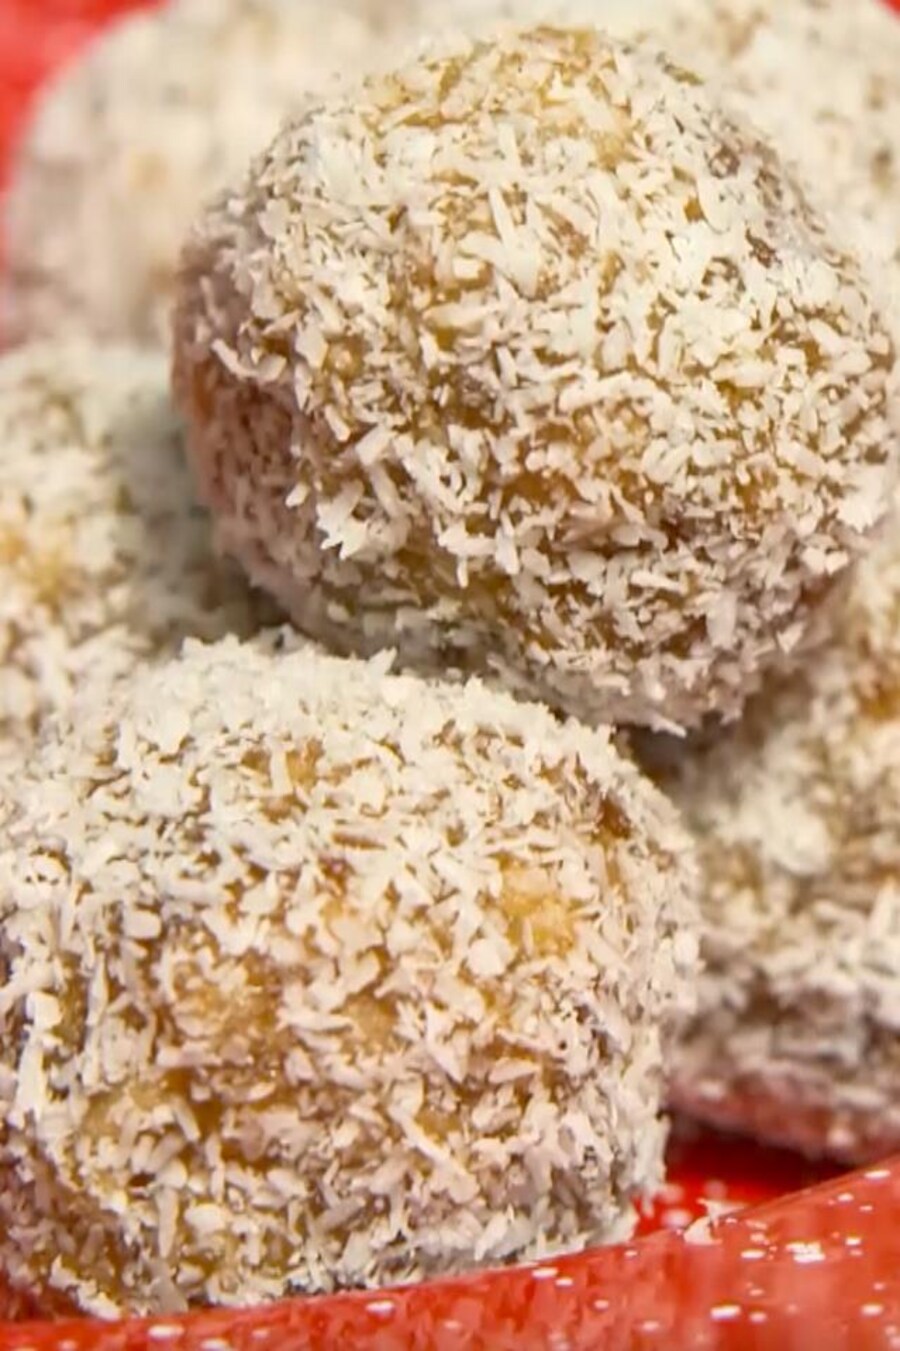 Des boules saupoudrées de noix de coco dans une assiette rouge.